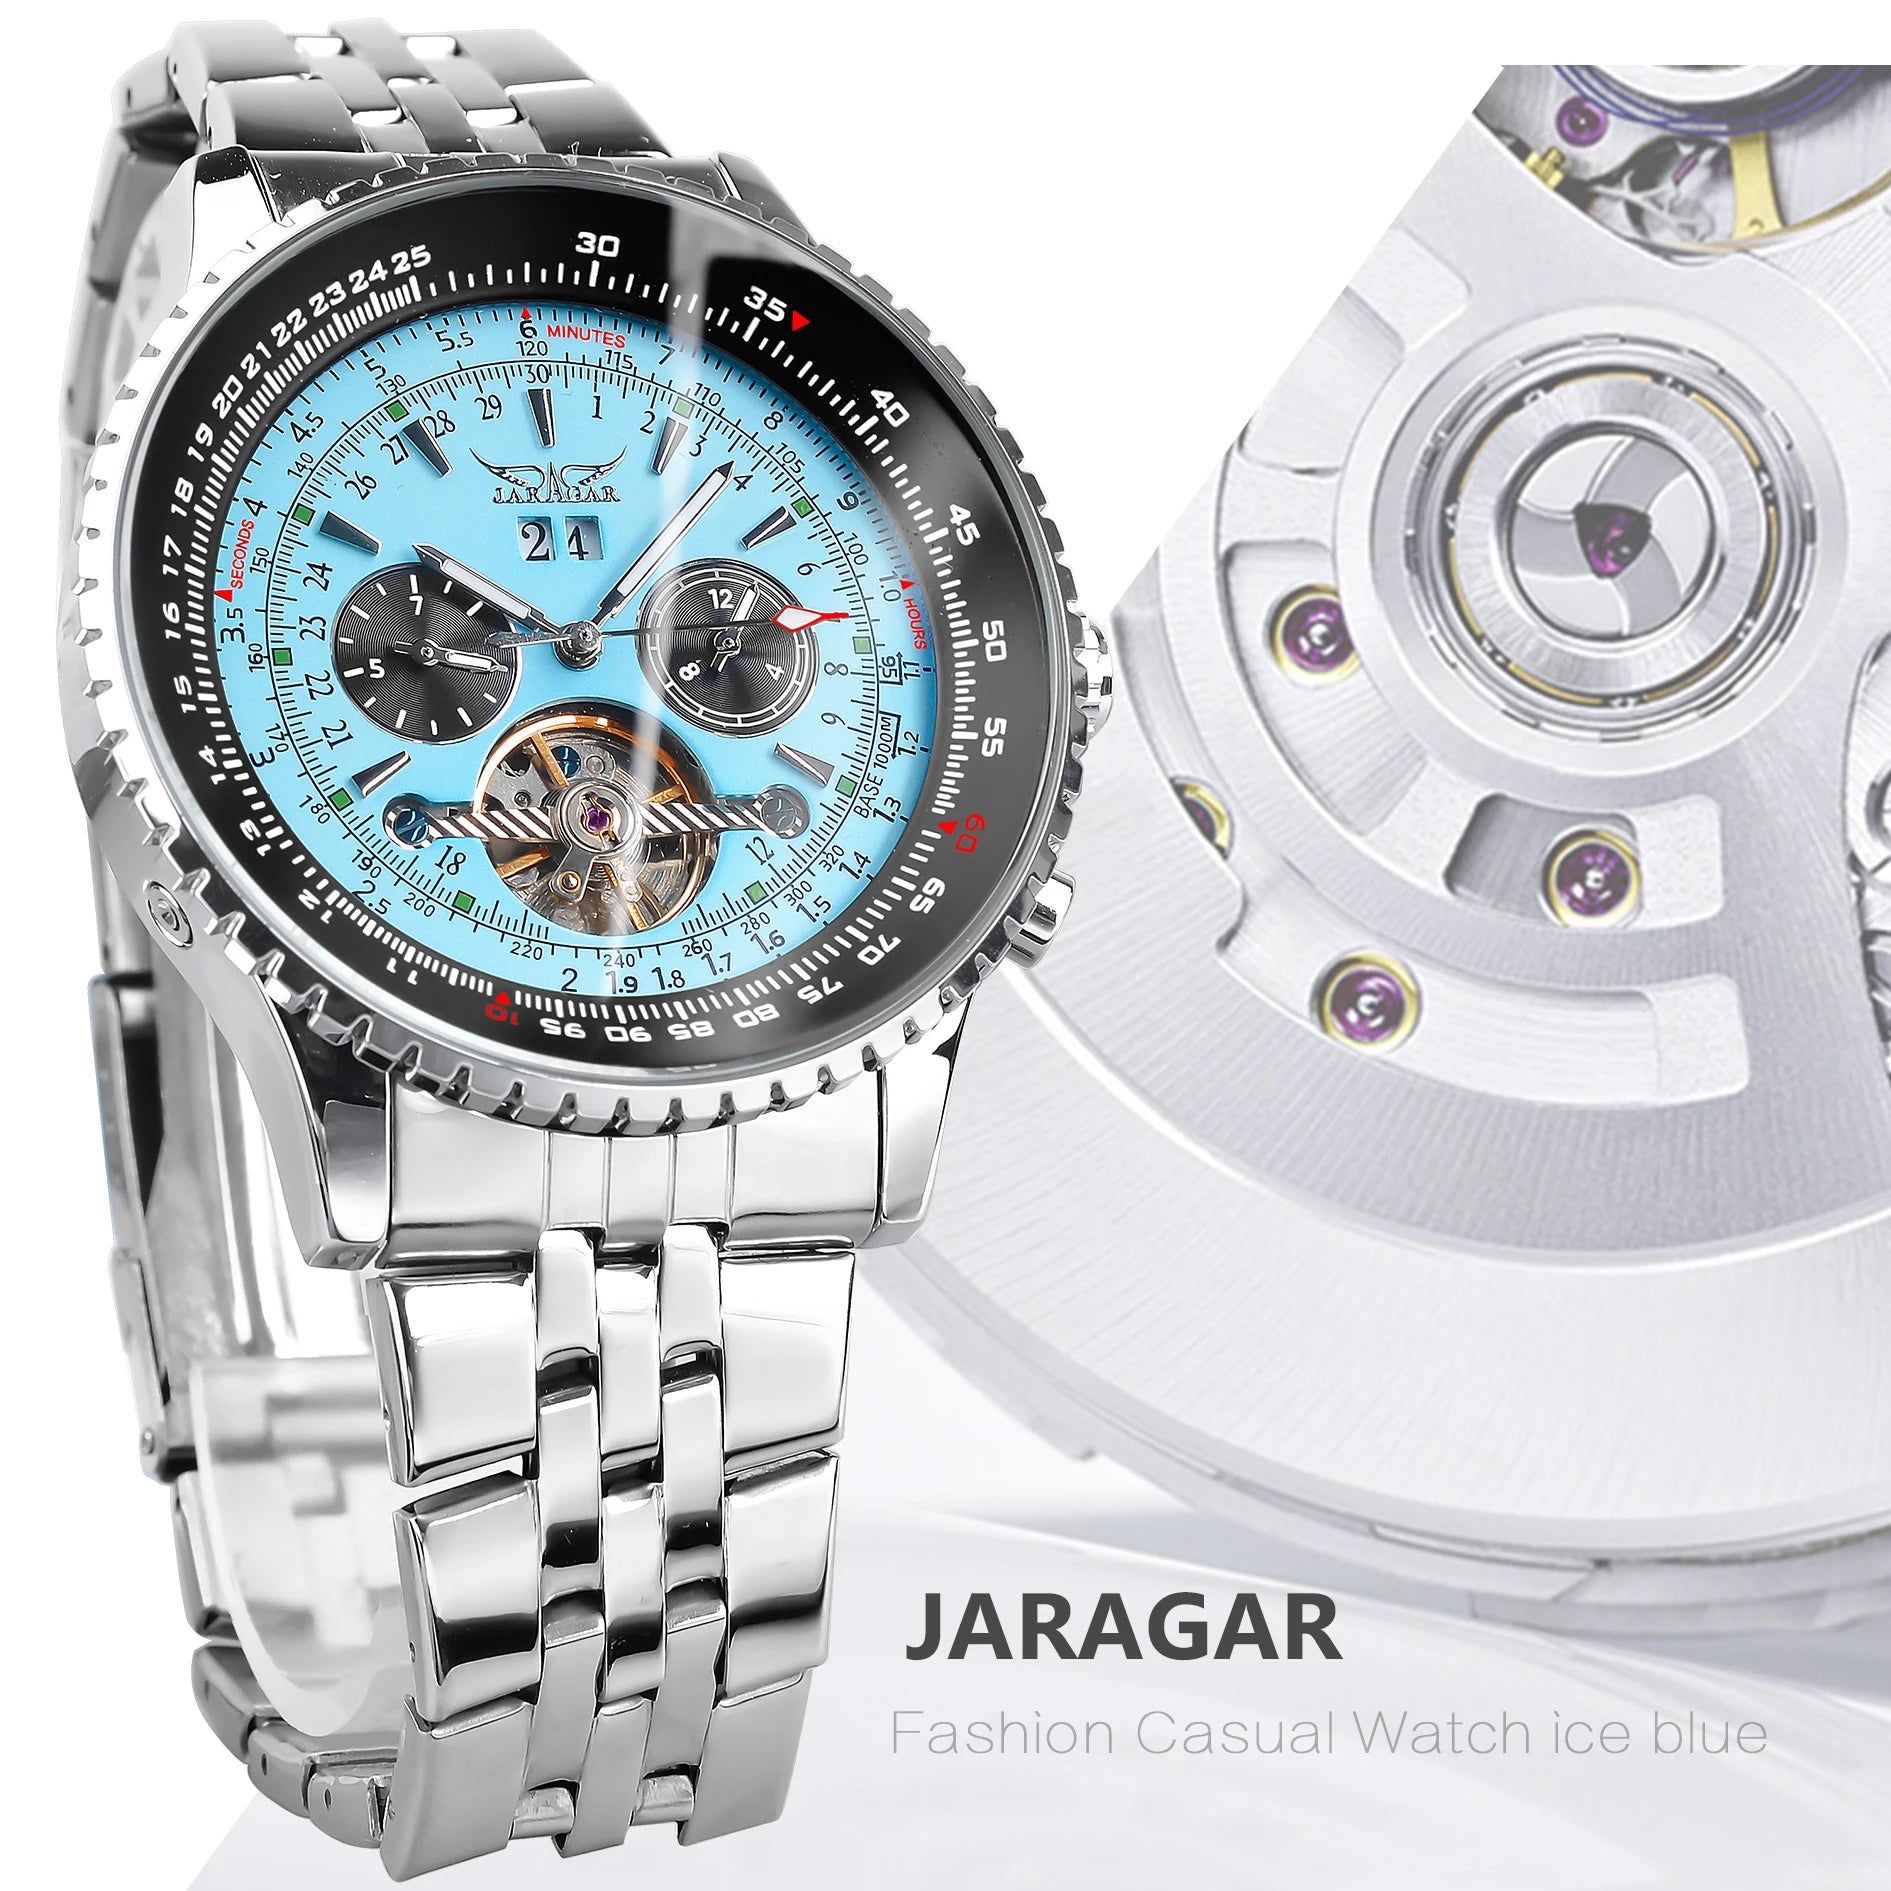 ساعة ميكانيكية أوتوماتيكية للرجال من Jaragar، ساعة توربيون بقرص أزرق، عرض التاريخ، حزام من الفولاذ المقاوم للصدأ، ساعات رياضية عسكرية